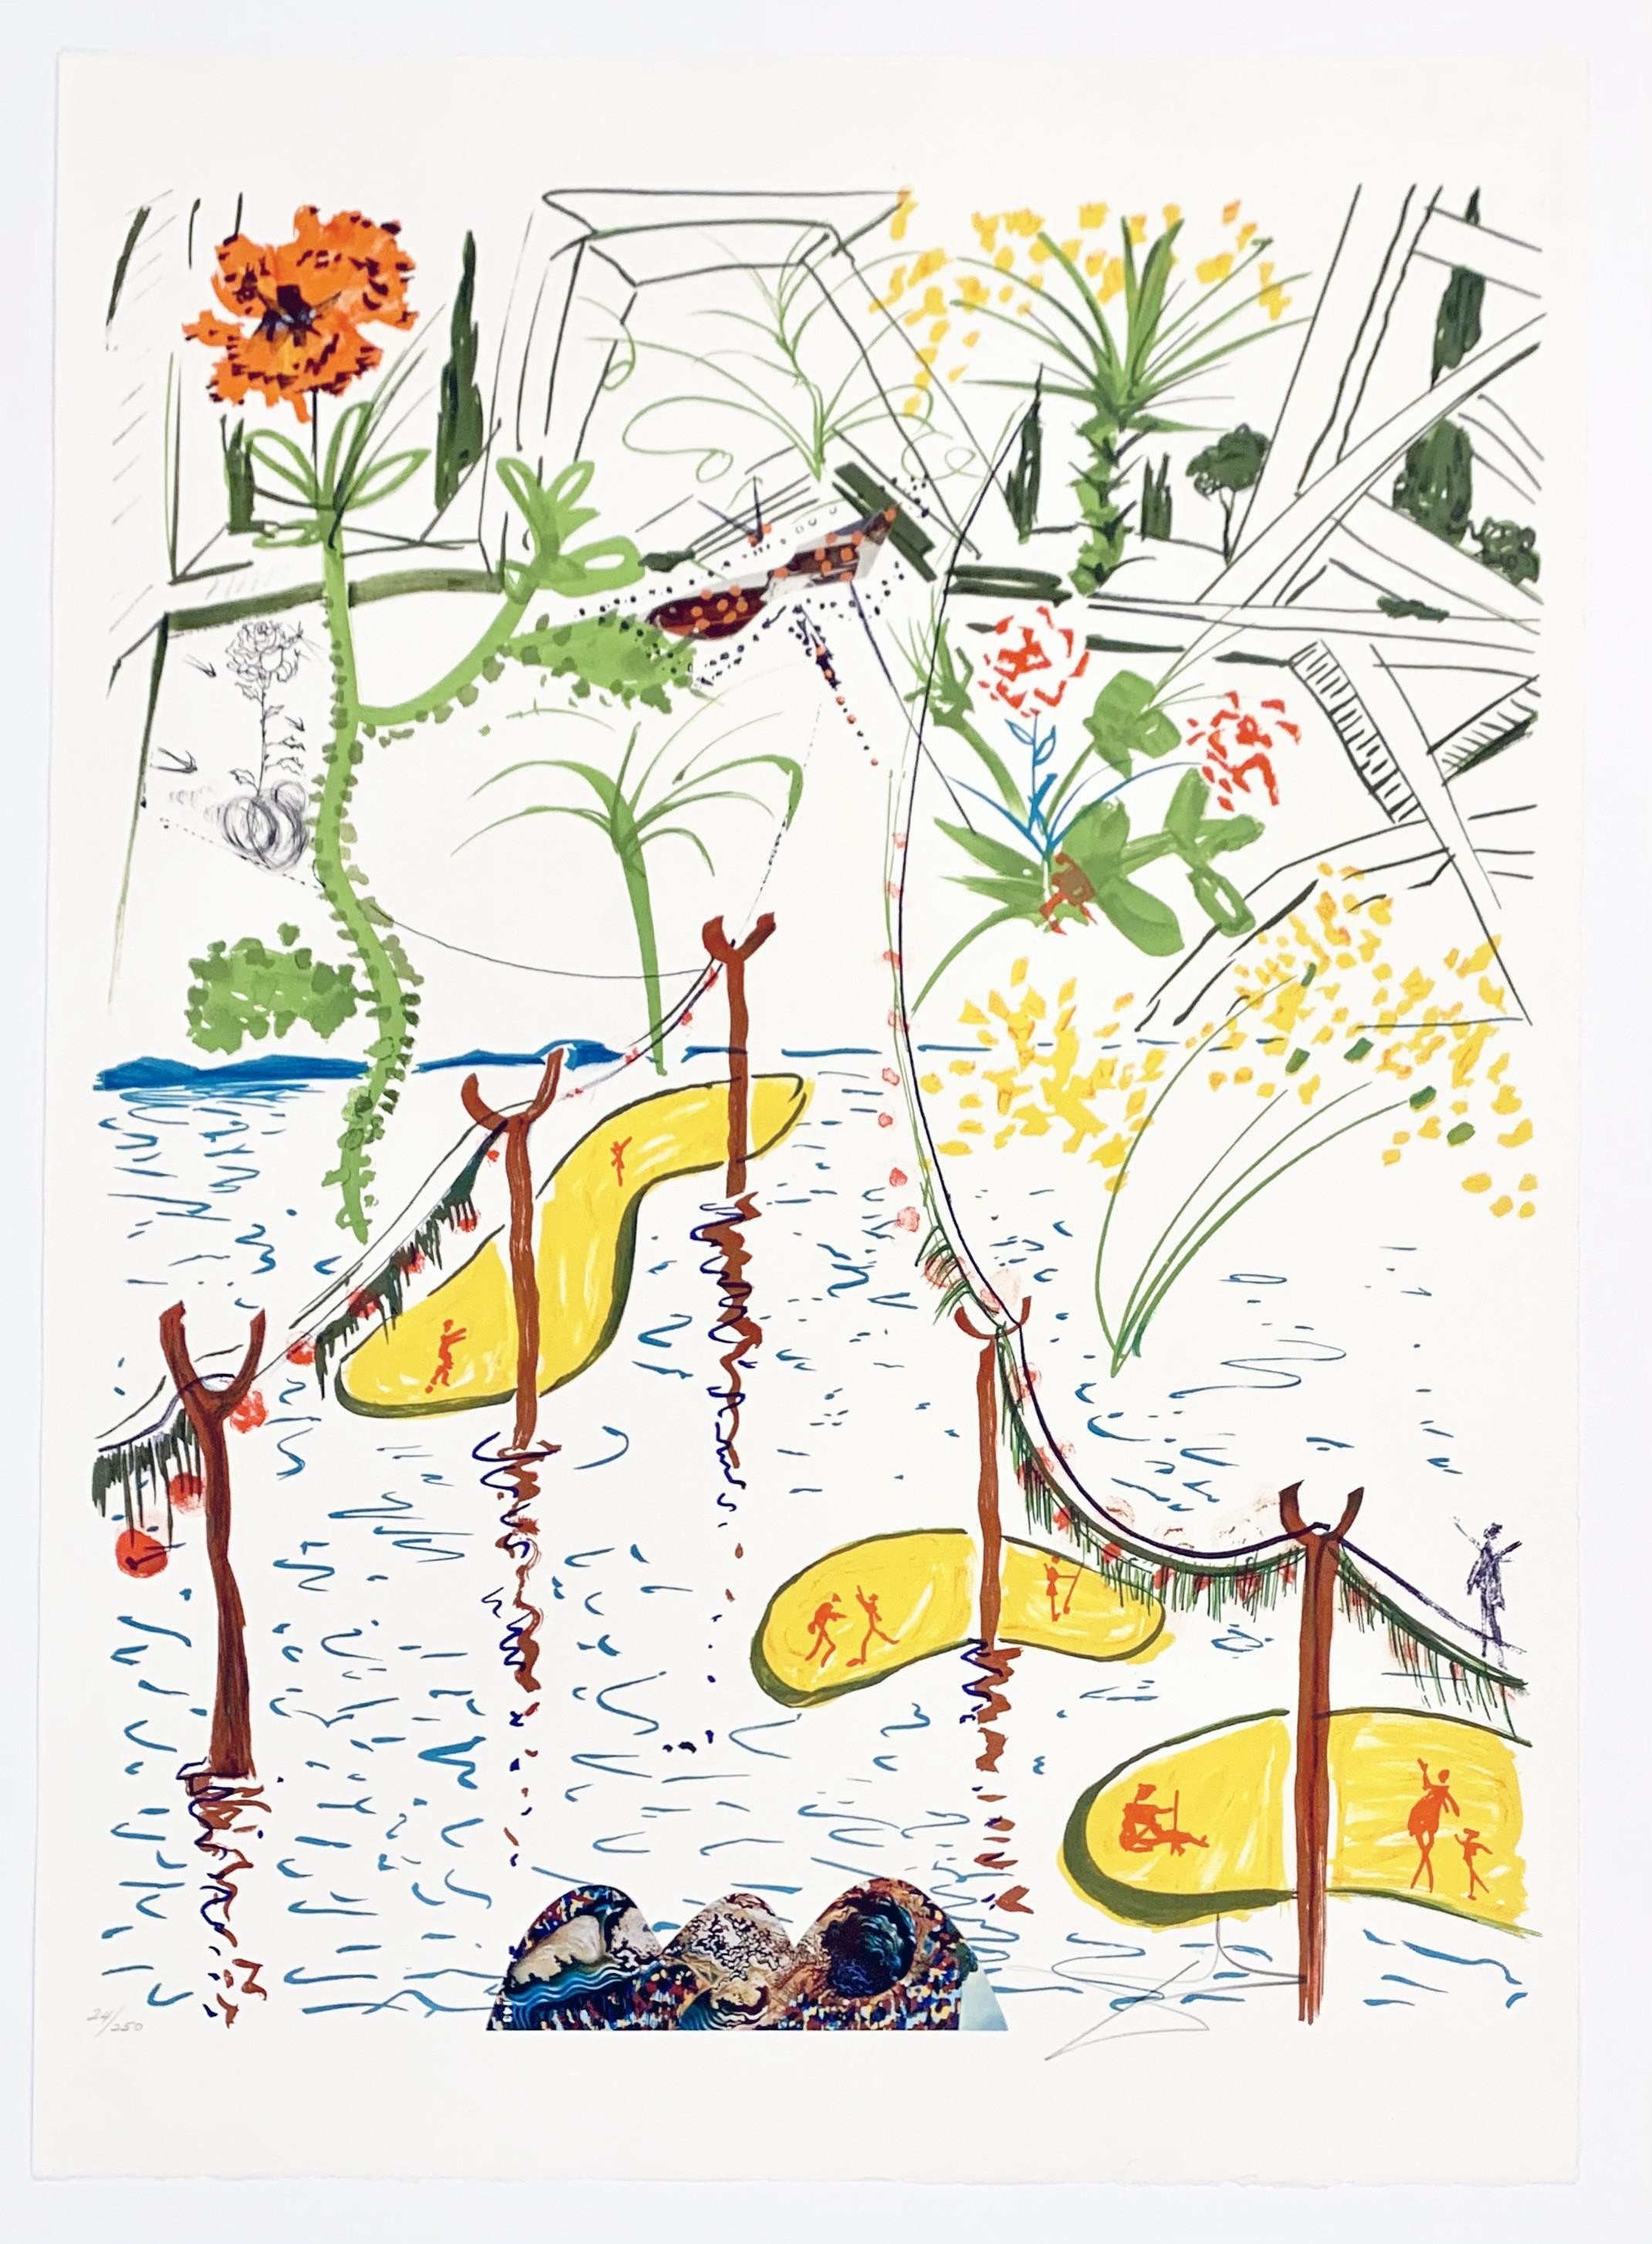 Biological Garden - Print by Salvador Dalí